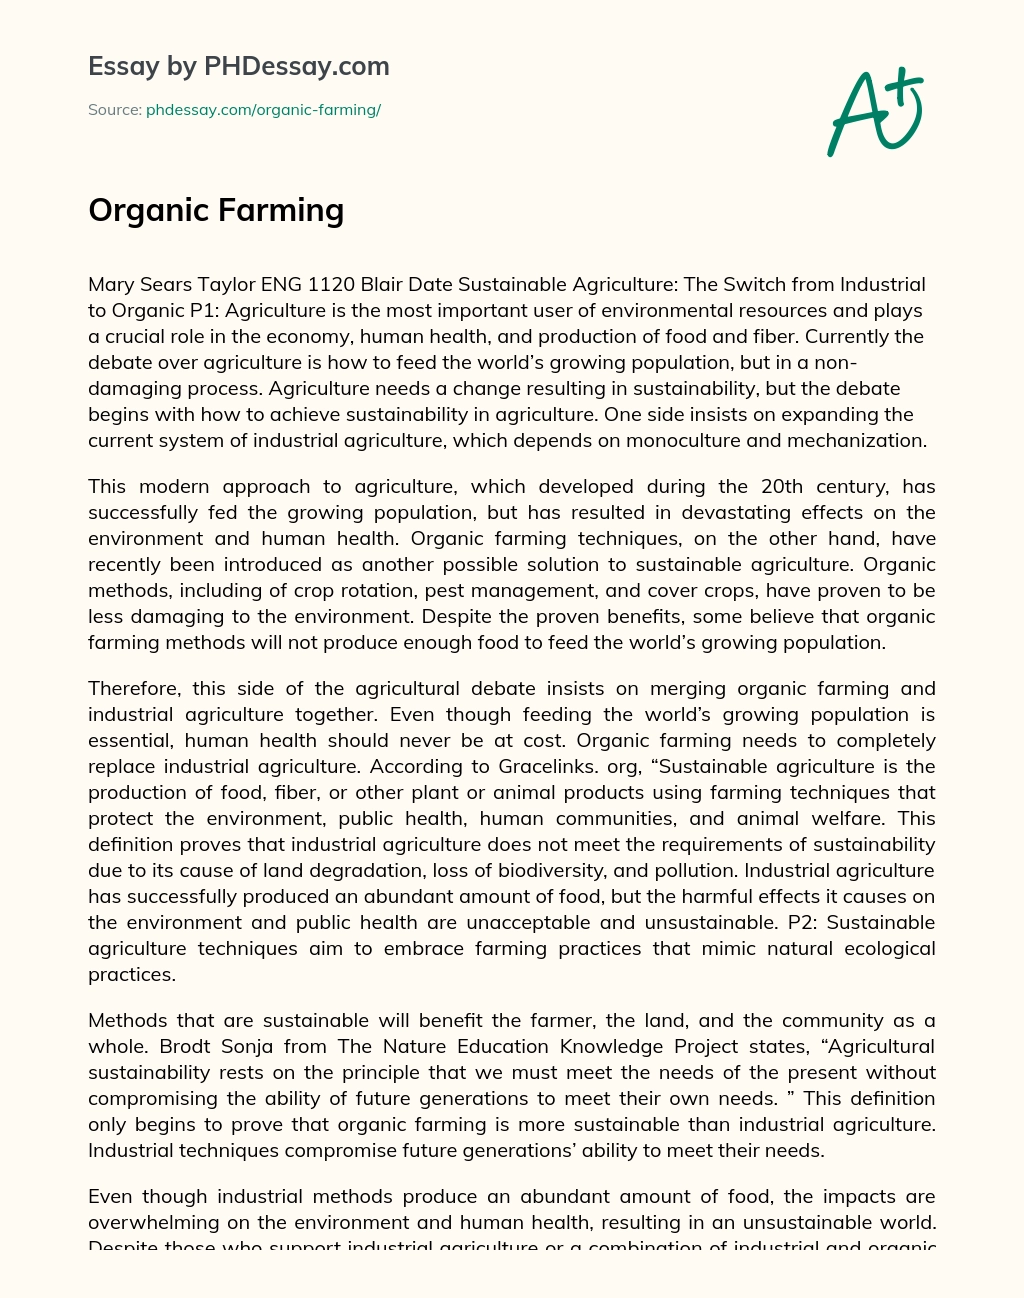 Organic Farming essay